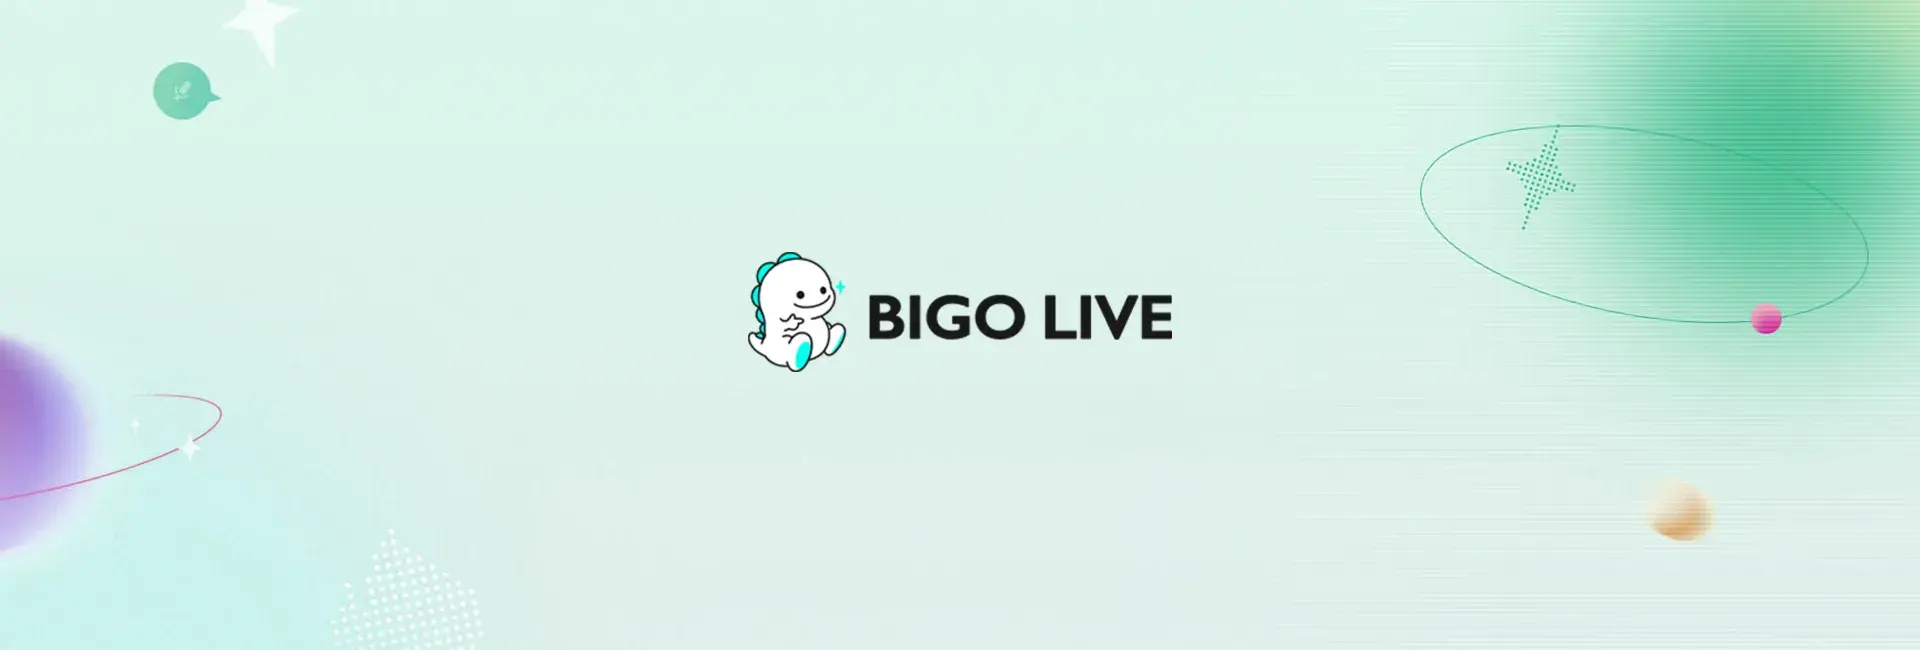 Bigo Live - 46 Diamonds (Global)	